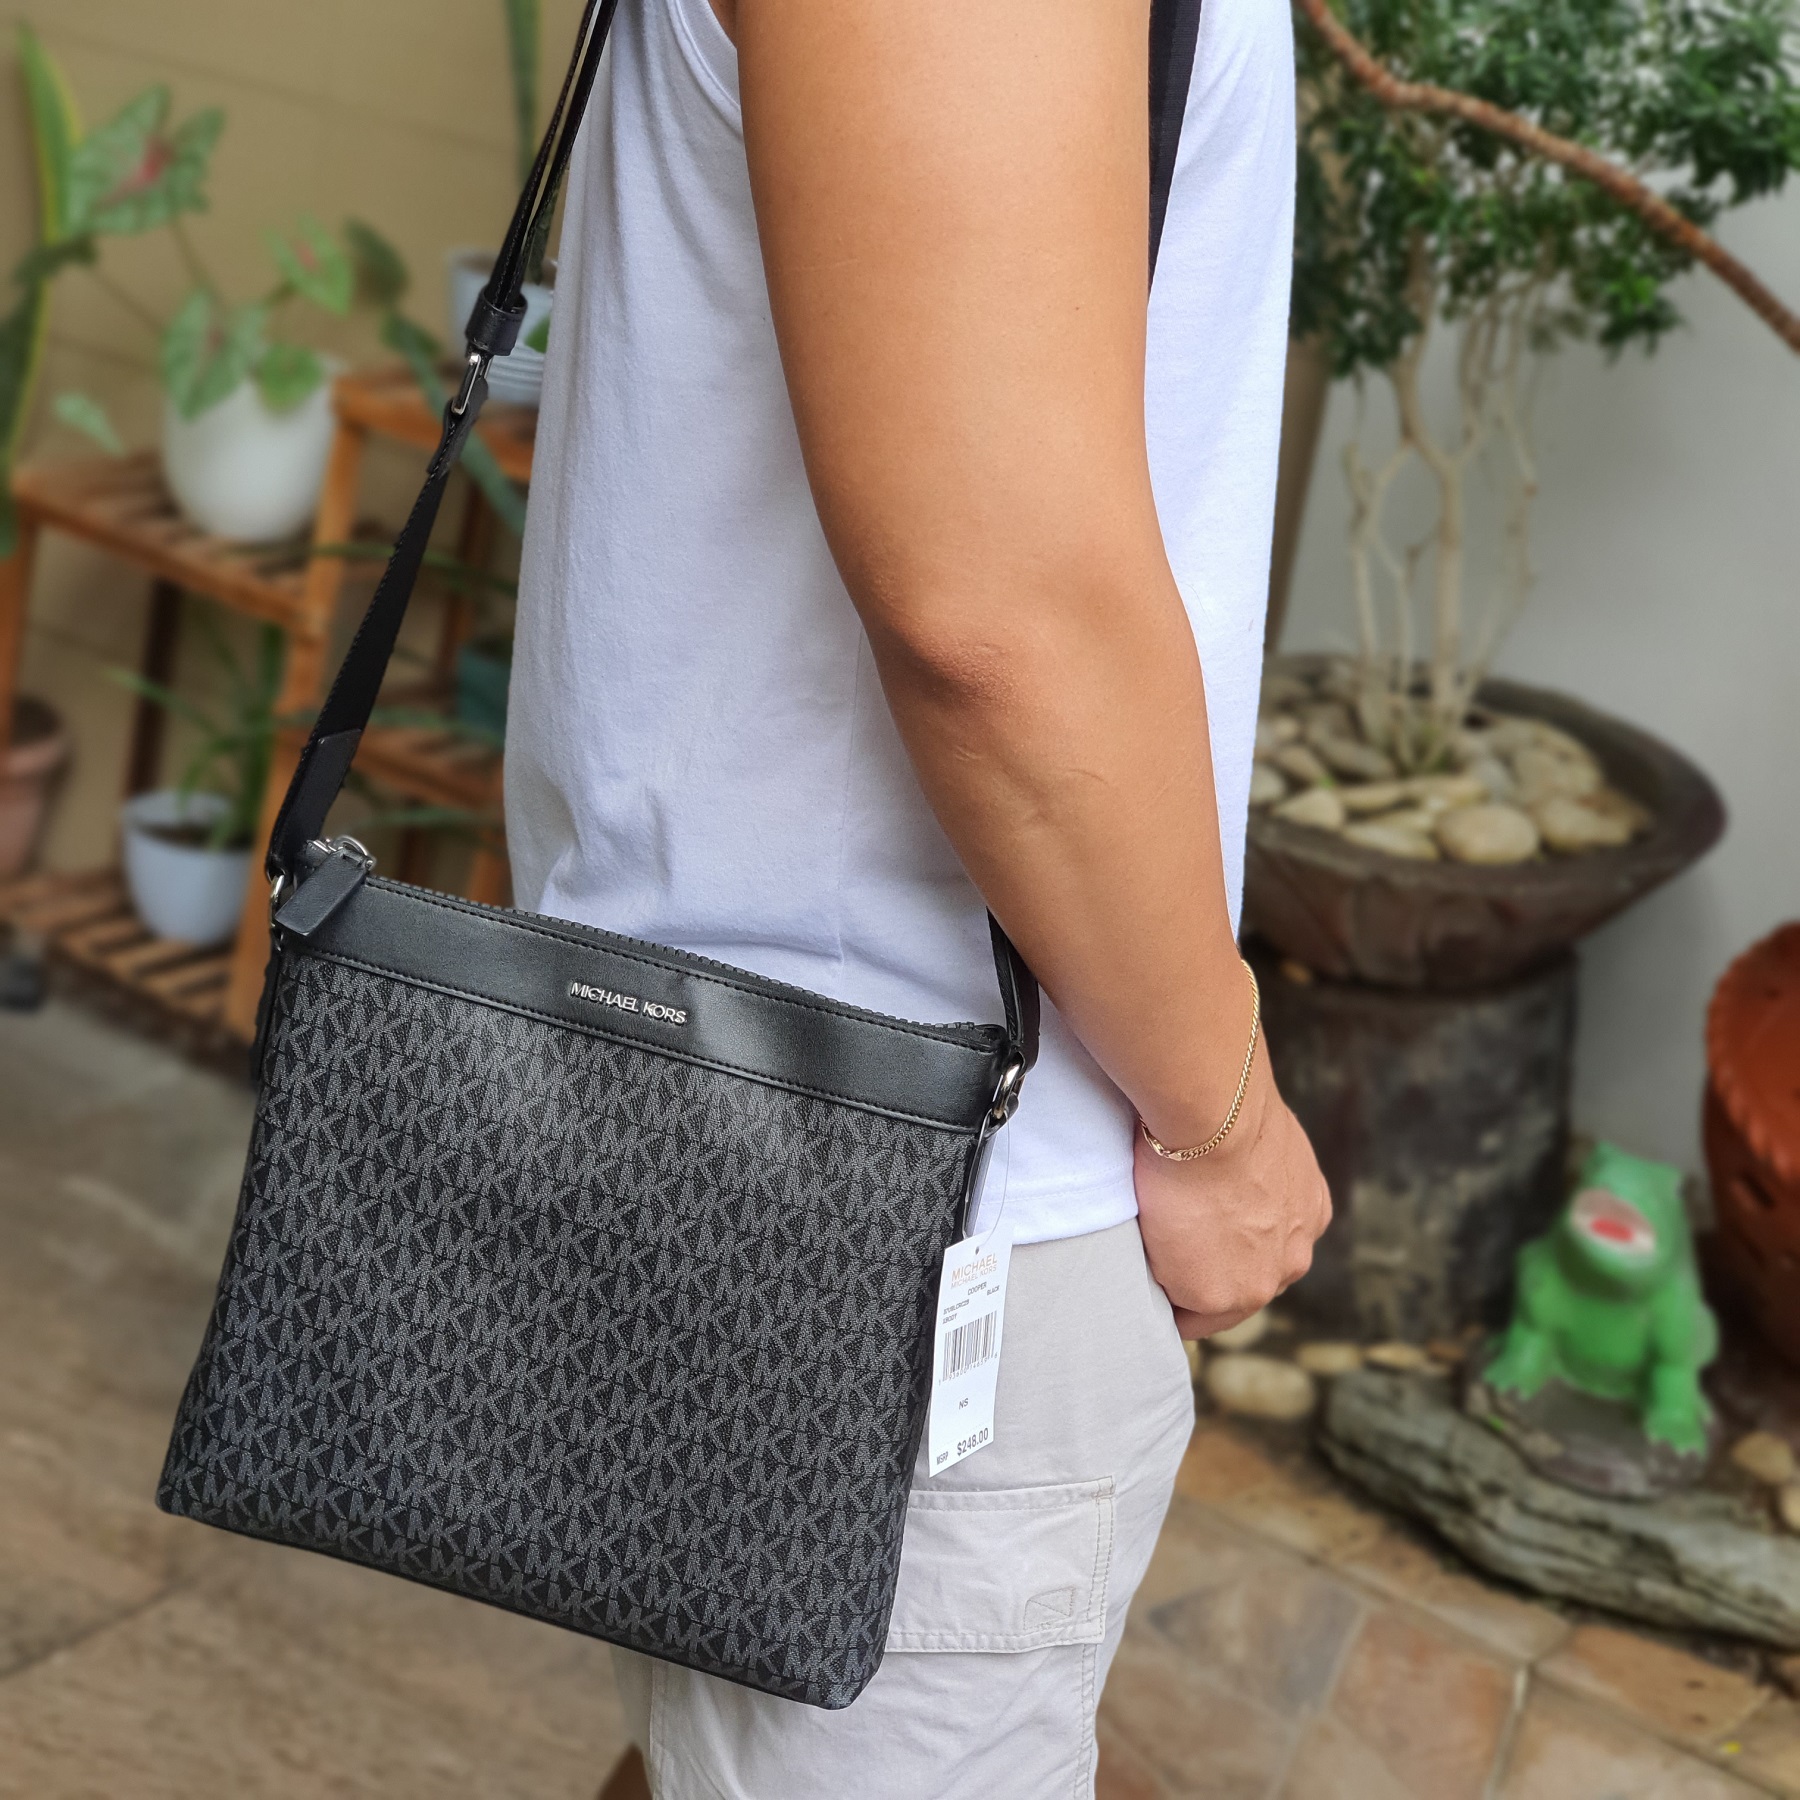 Michael Kors Women's Rhea Zip Bag, Black (Black), 10.5 W x 14 H x 6 D:  Handbags